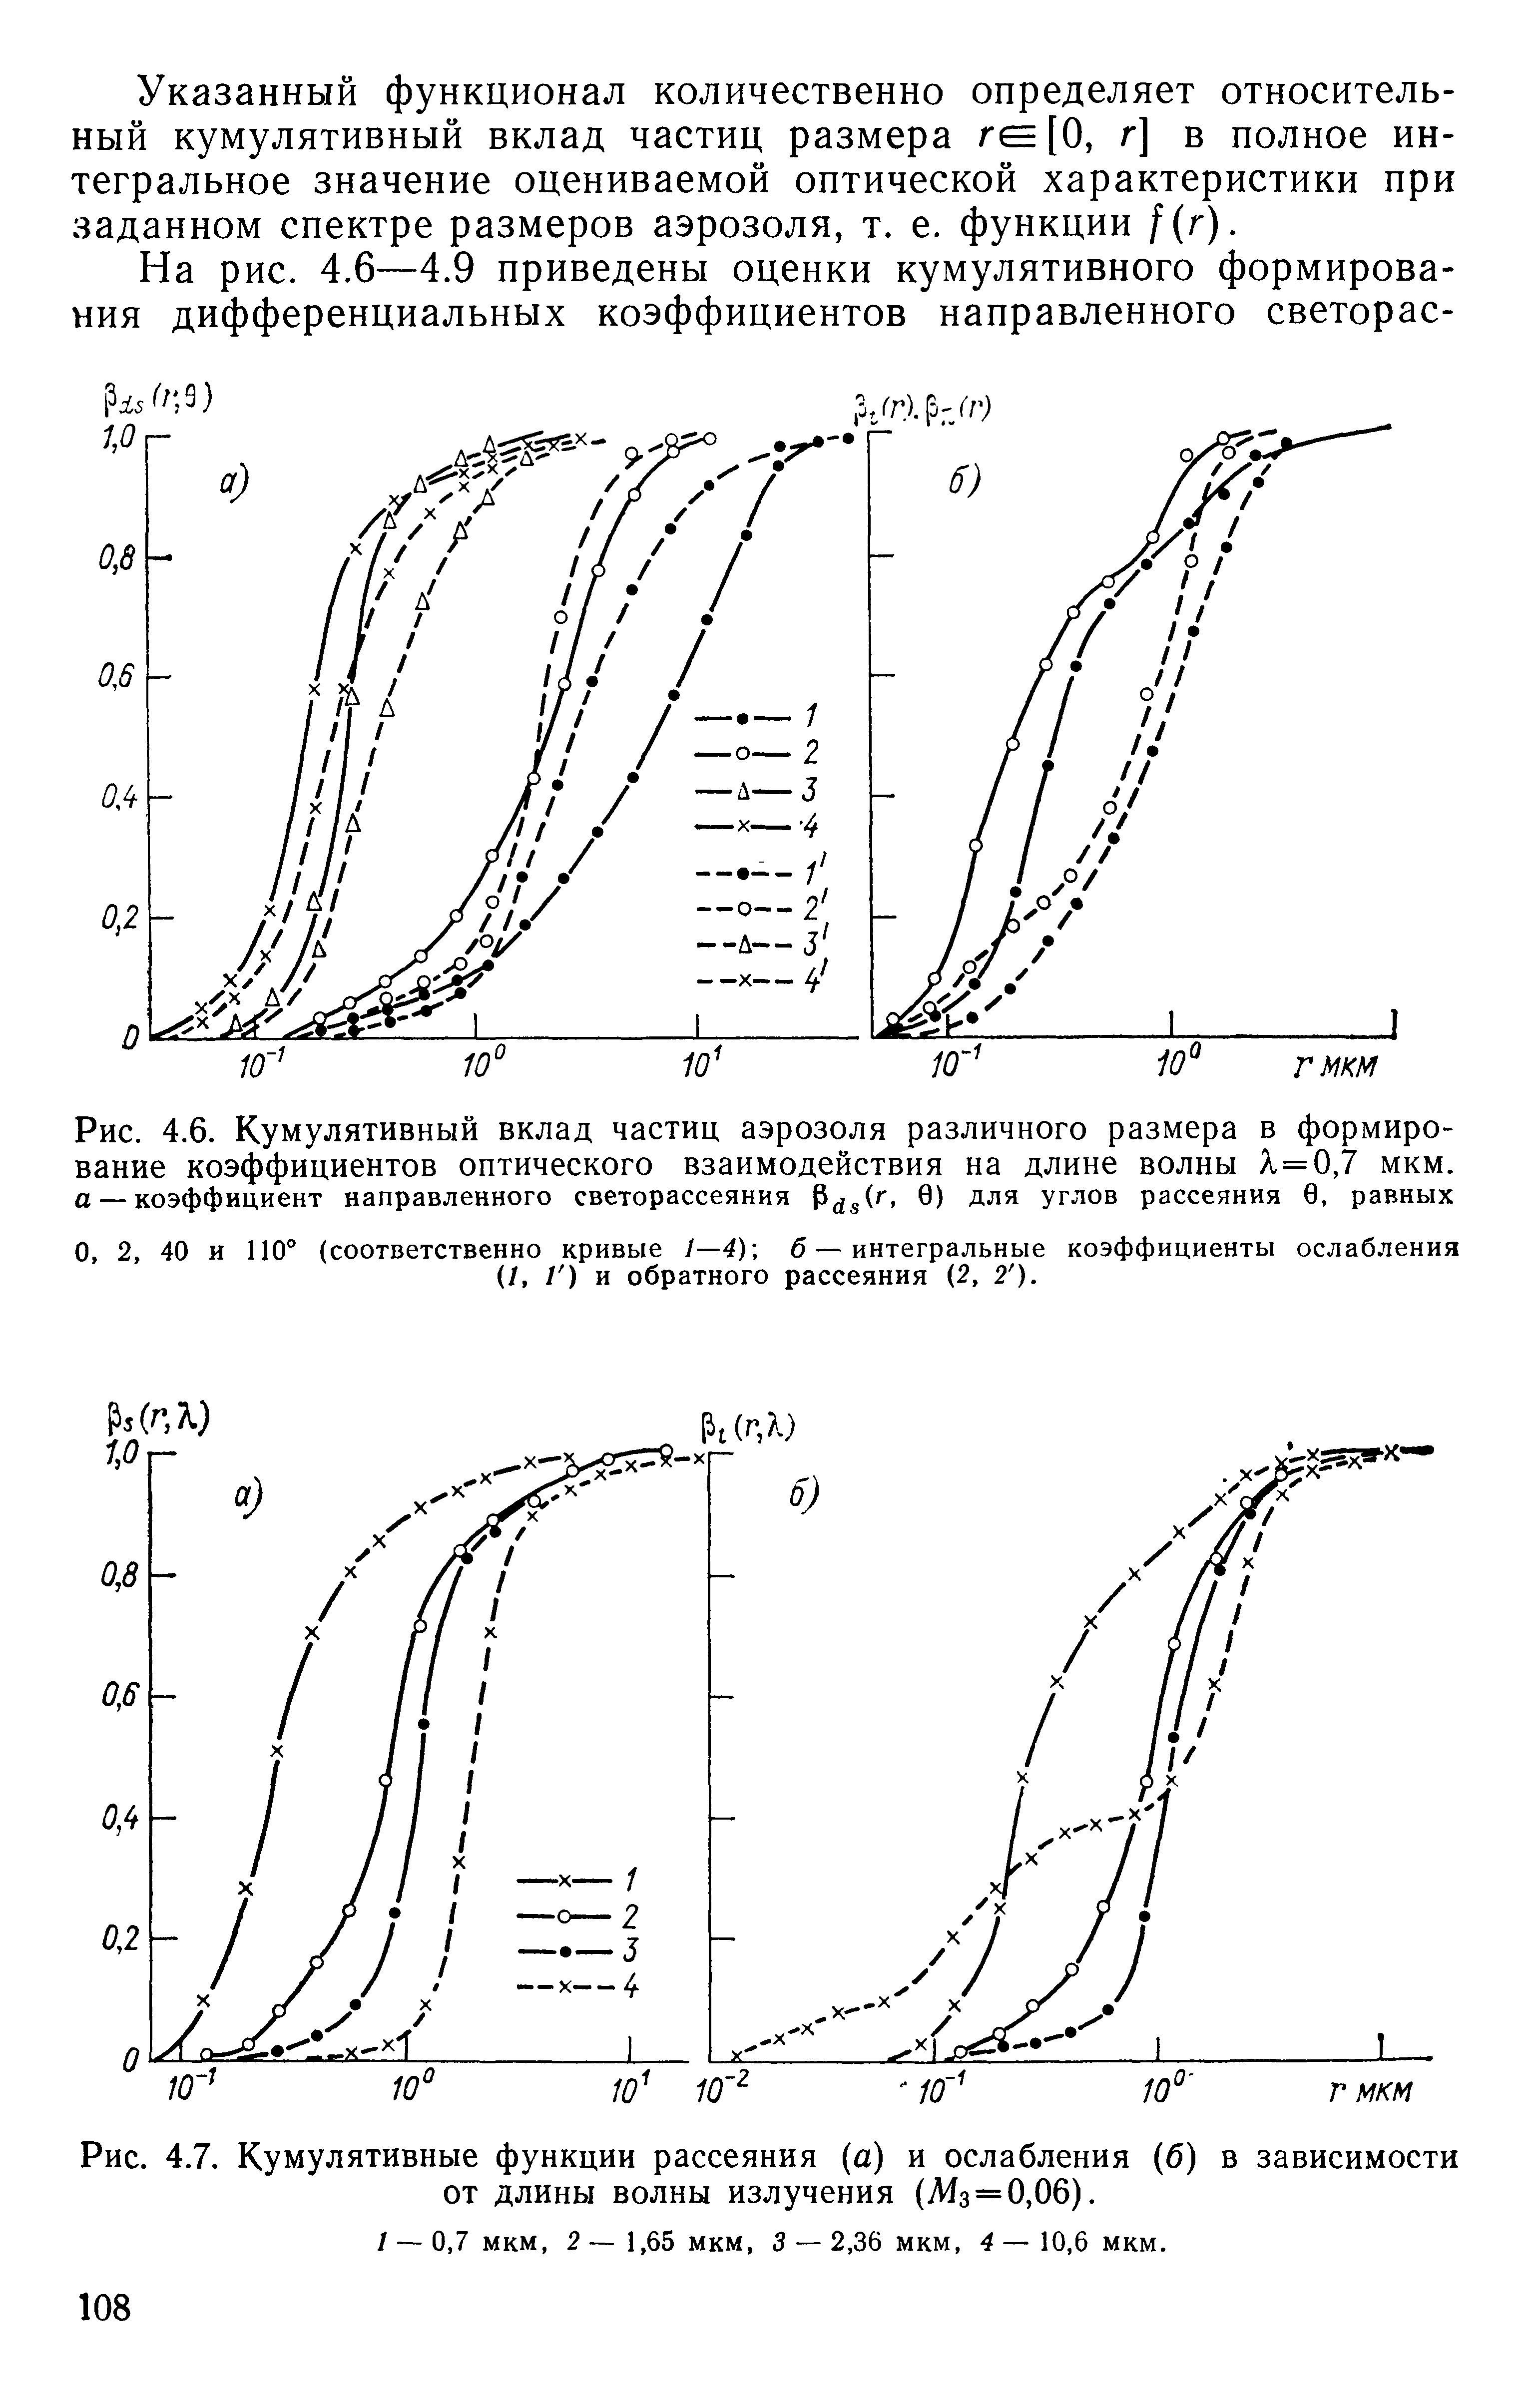 Рис. 4.6. Кумулятивный вклад частиц аэрозоля различного размера в формирование коэффициентов оптического взаимодействия на длине волны Л = 0,7 мкм.
